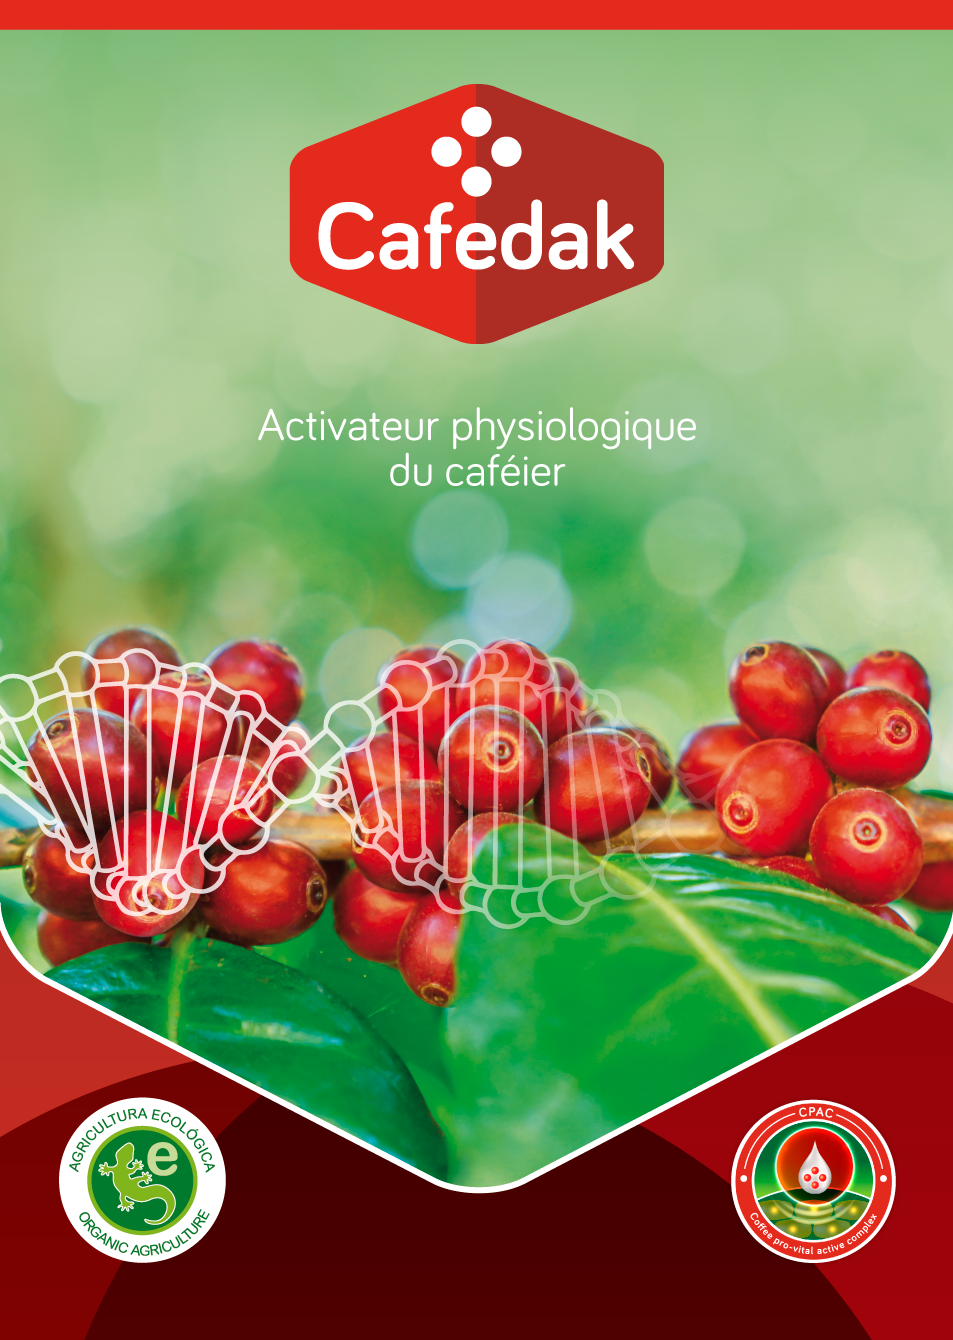 Cafedak: Activateur physiologique du caféier